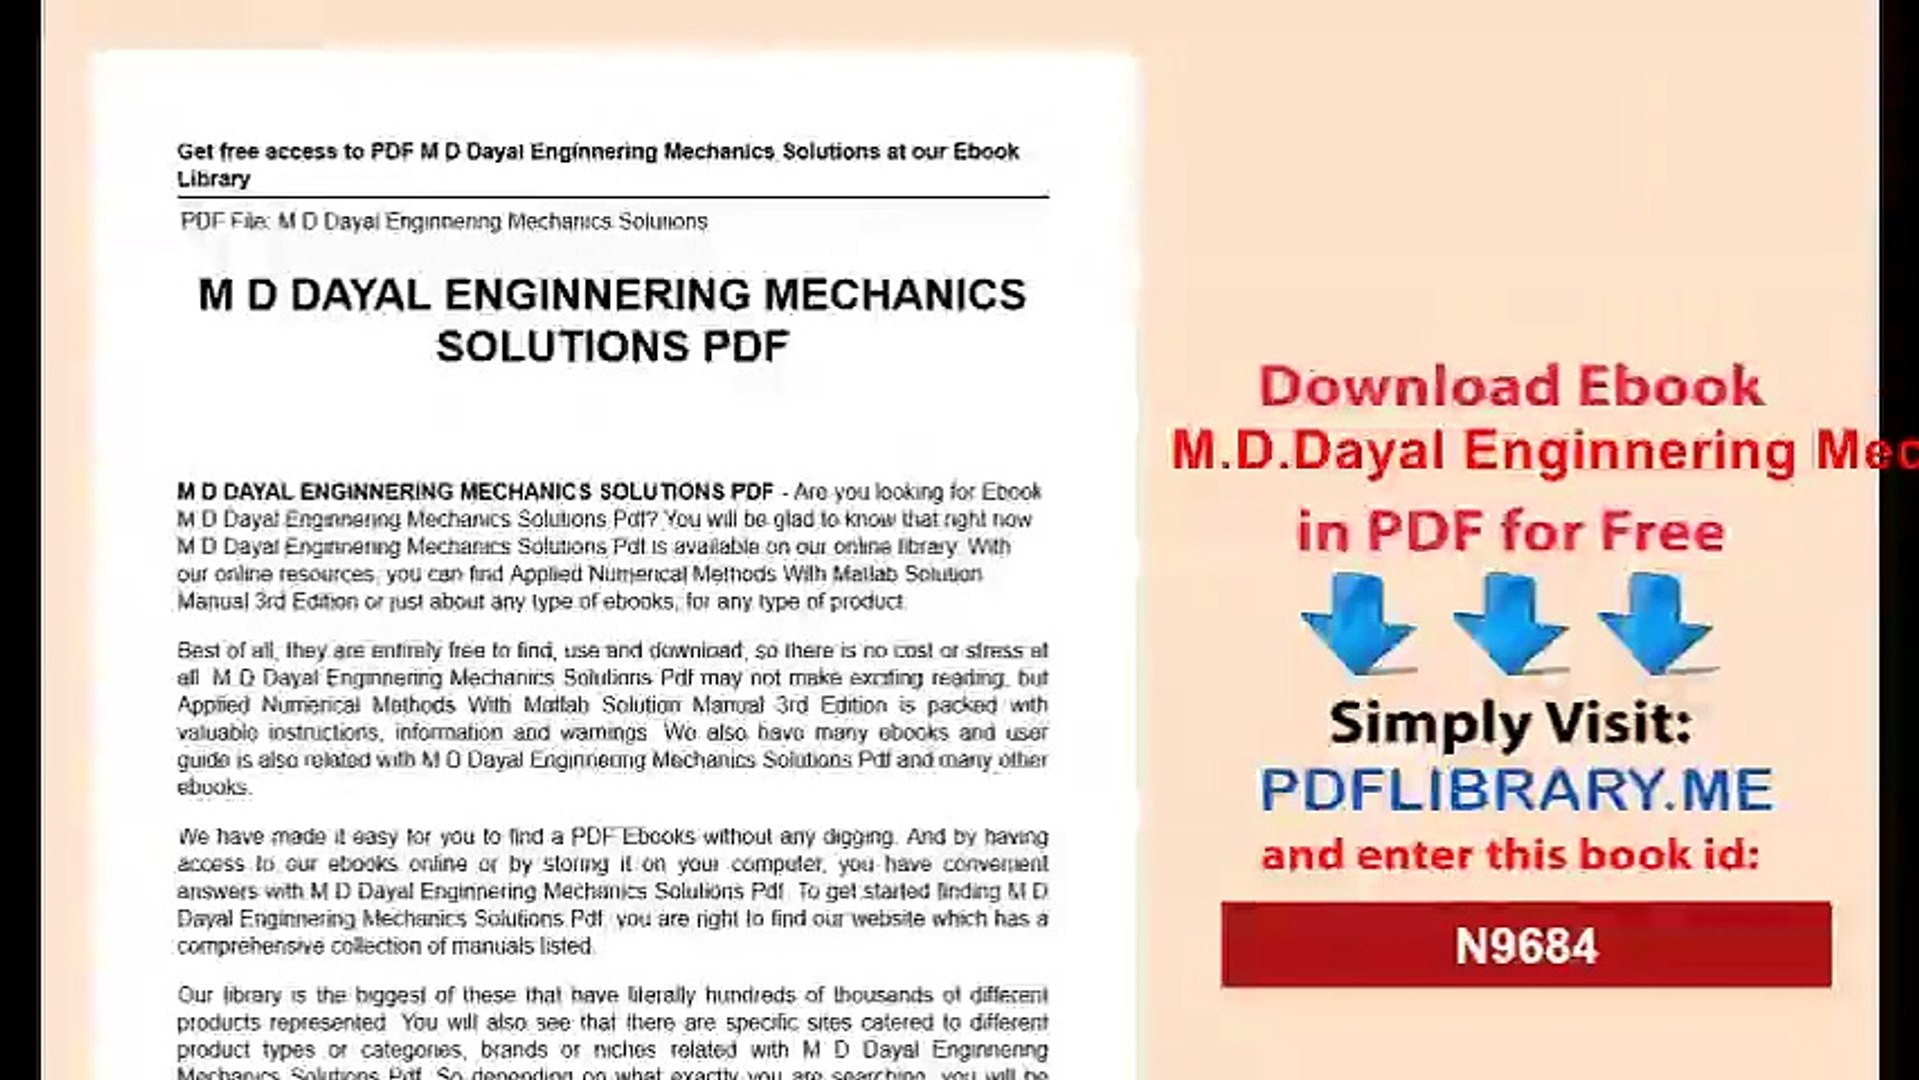 M.D.Dayal Enginnering Mechanics Solutions